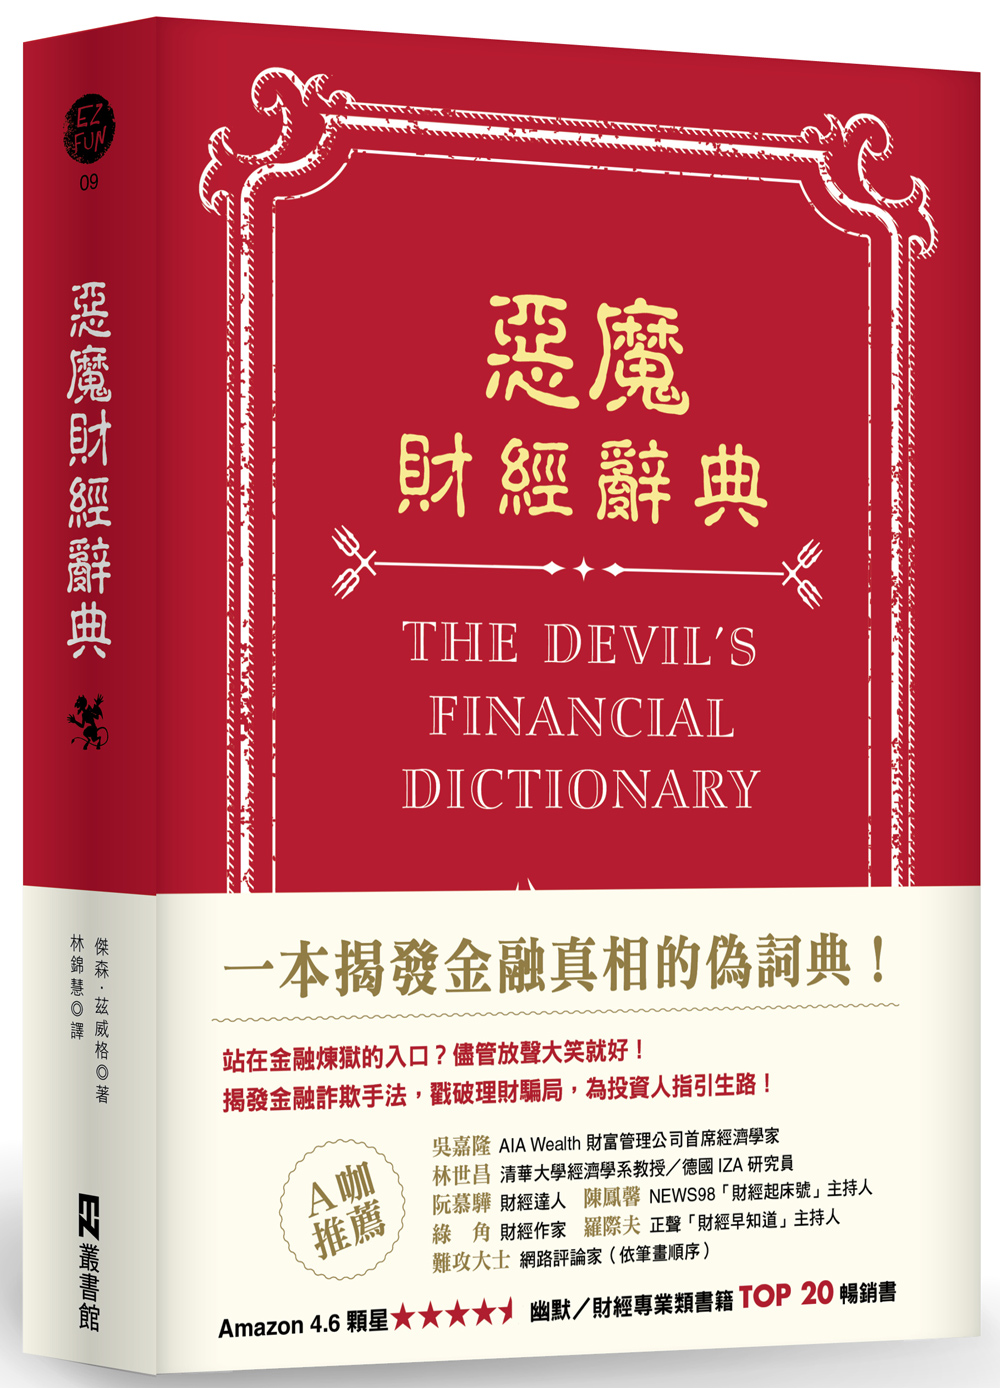 《惡魔財經辭典》中文版書封。